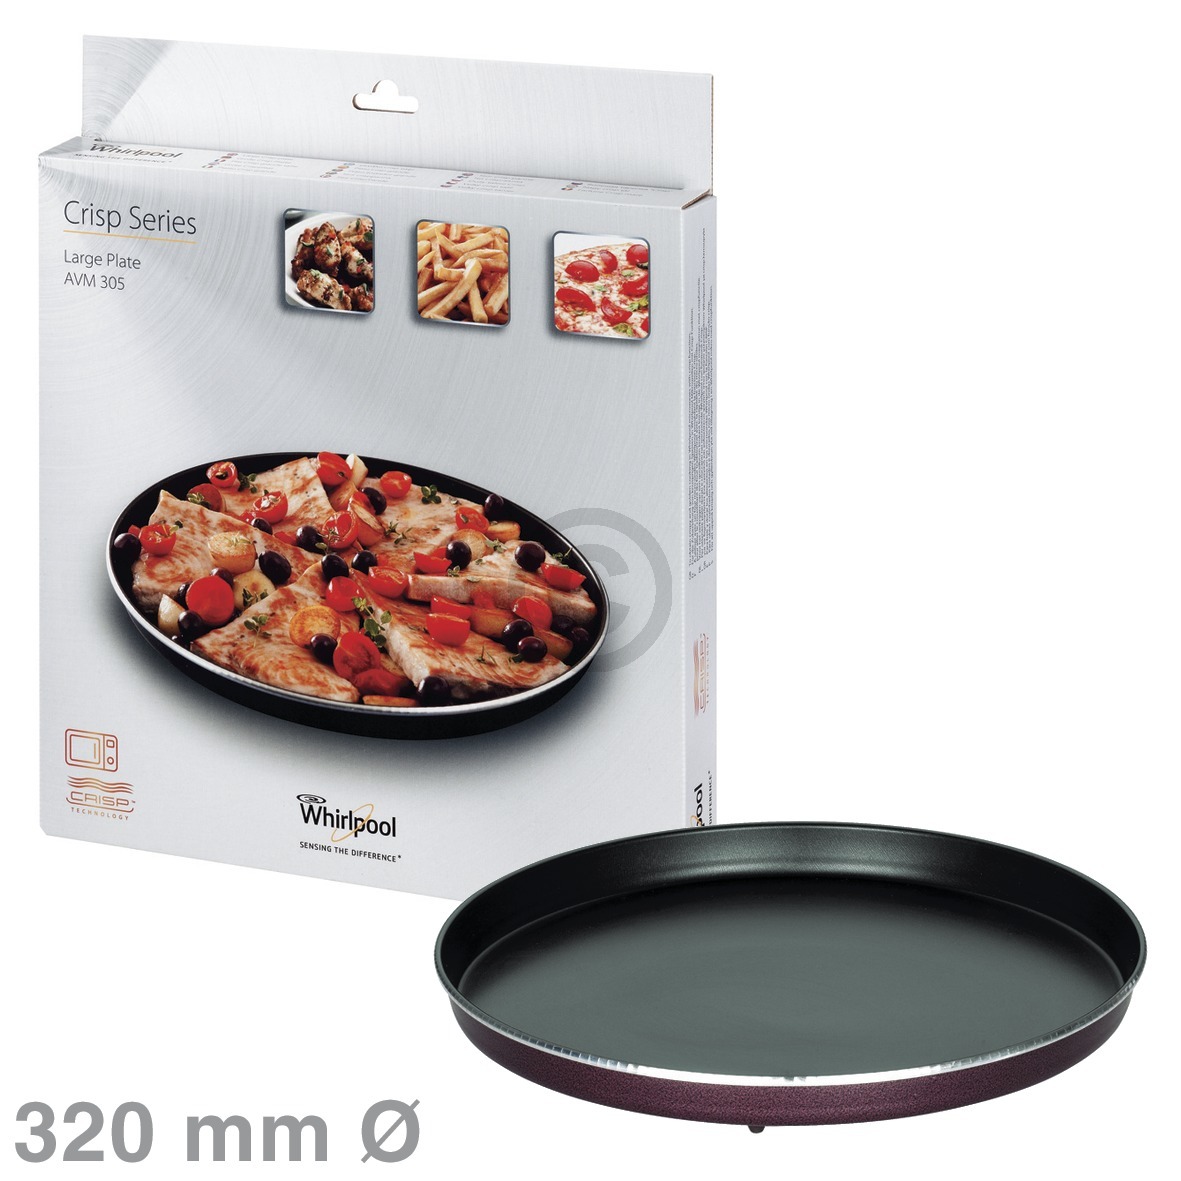 Drehteller Crisp-Platte 320mmØ groß Whirlpool AVM305